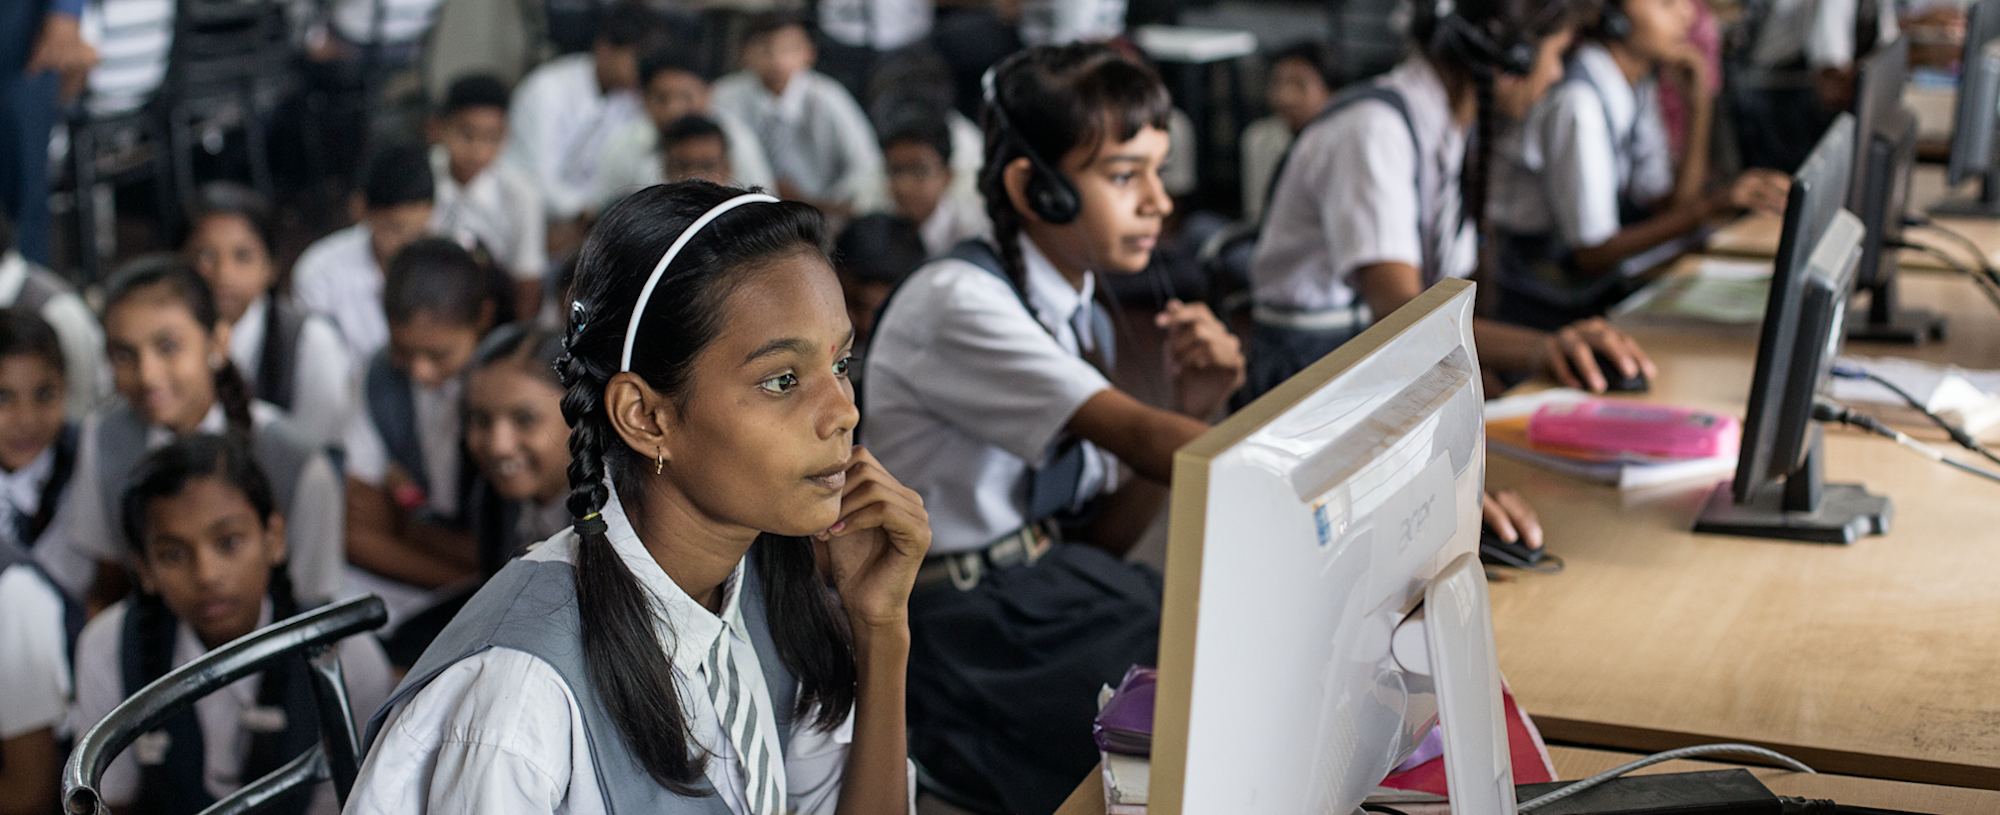 Schoolchildren in the classroom using computers